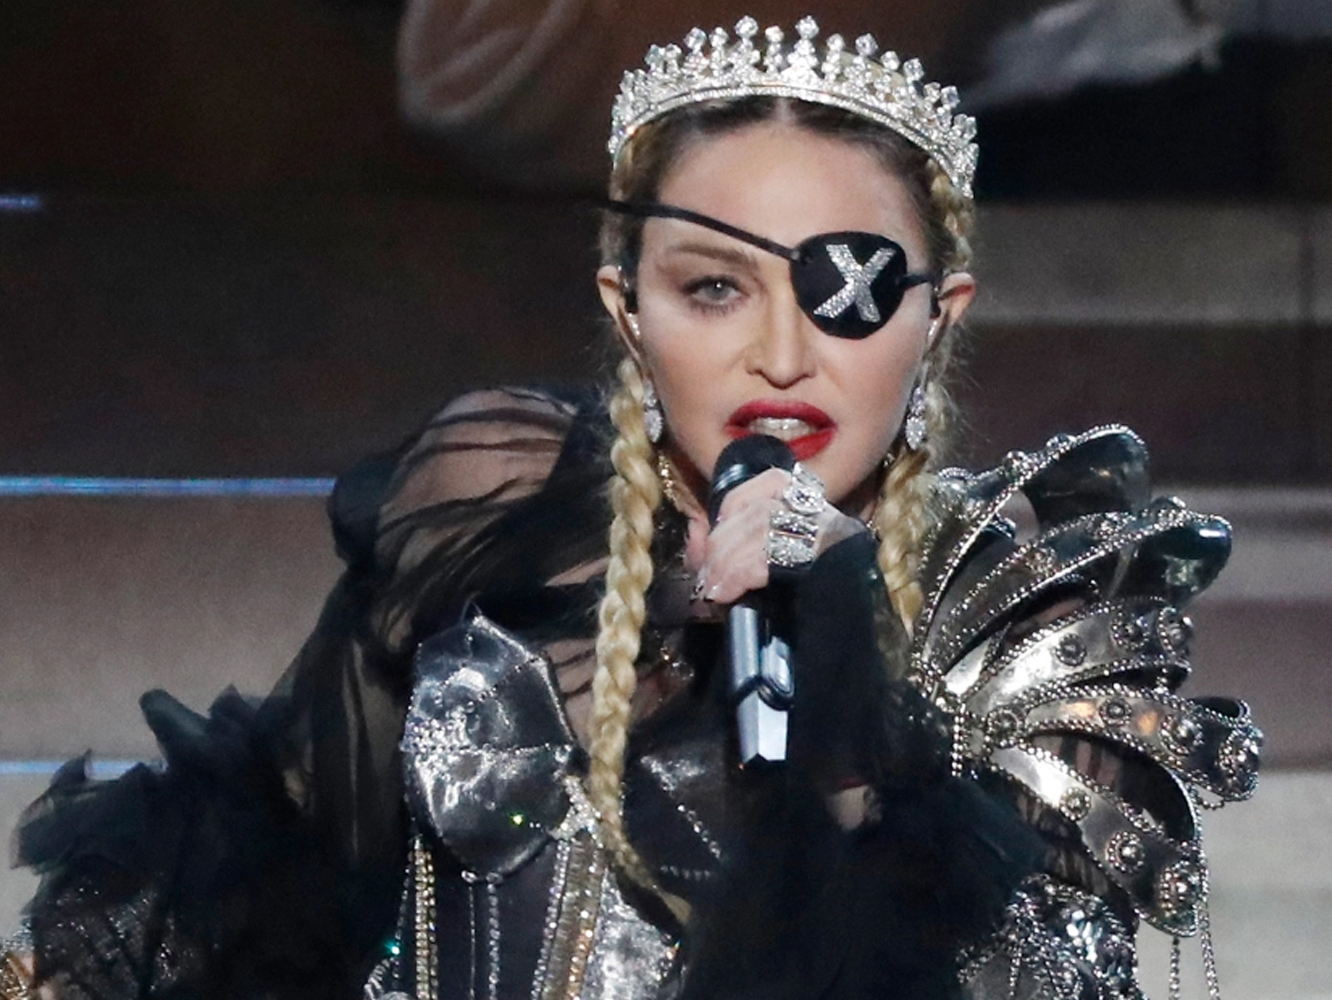  Madonna sube su actuación de Eurovisión a Youtube… con todos los desafines corregidos